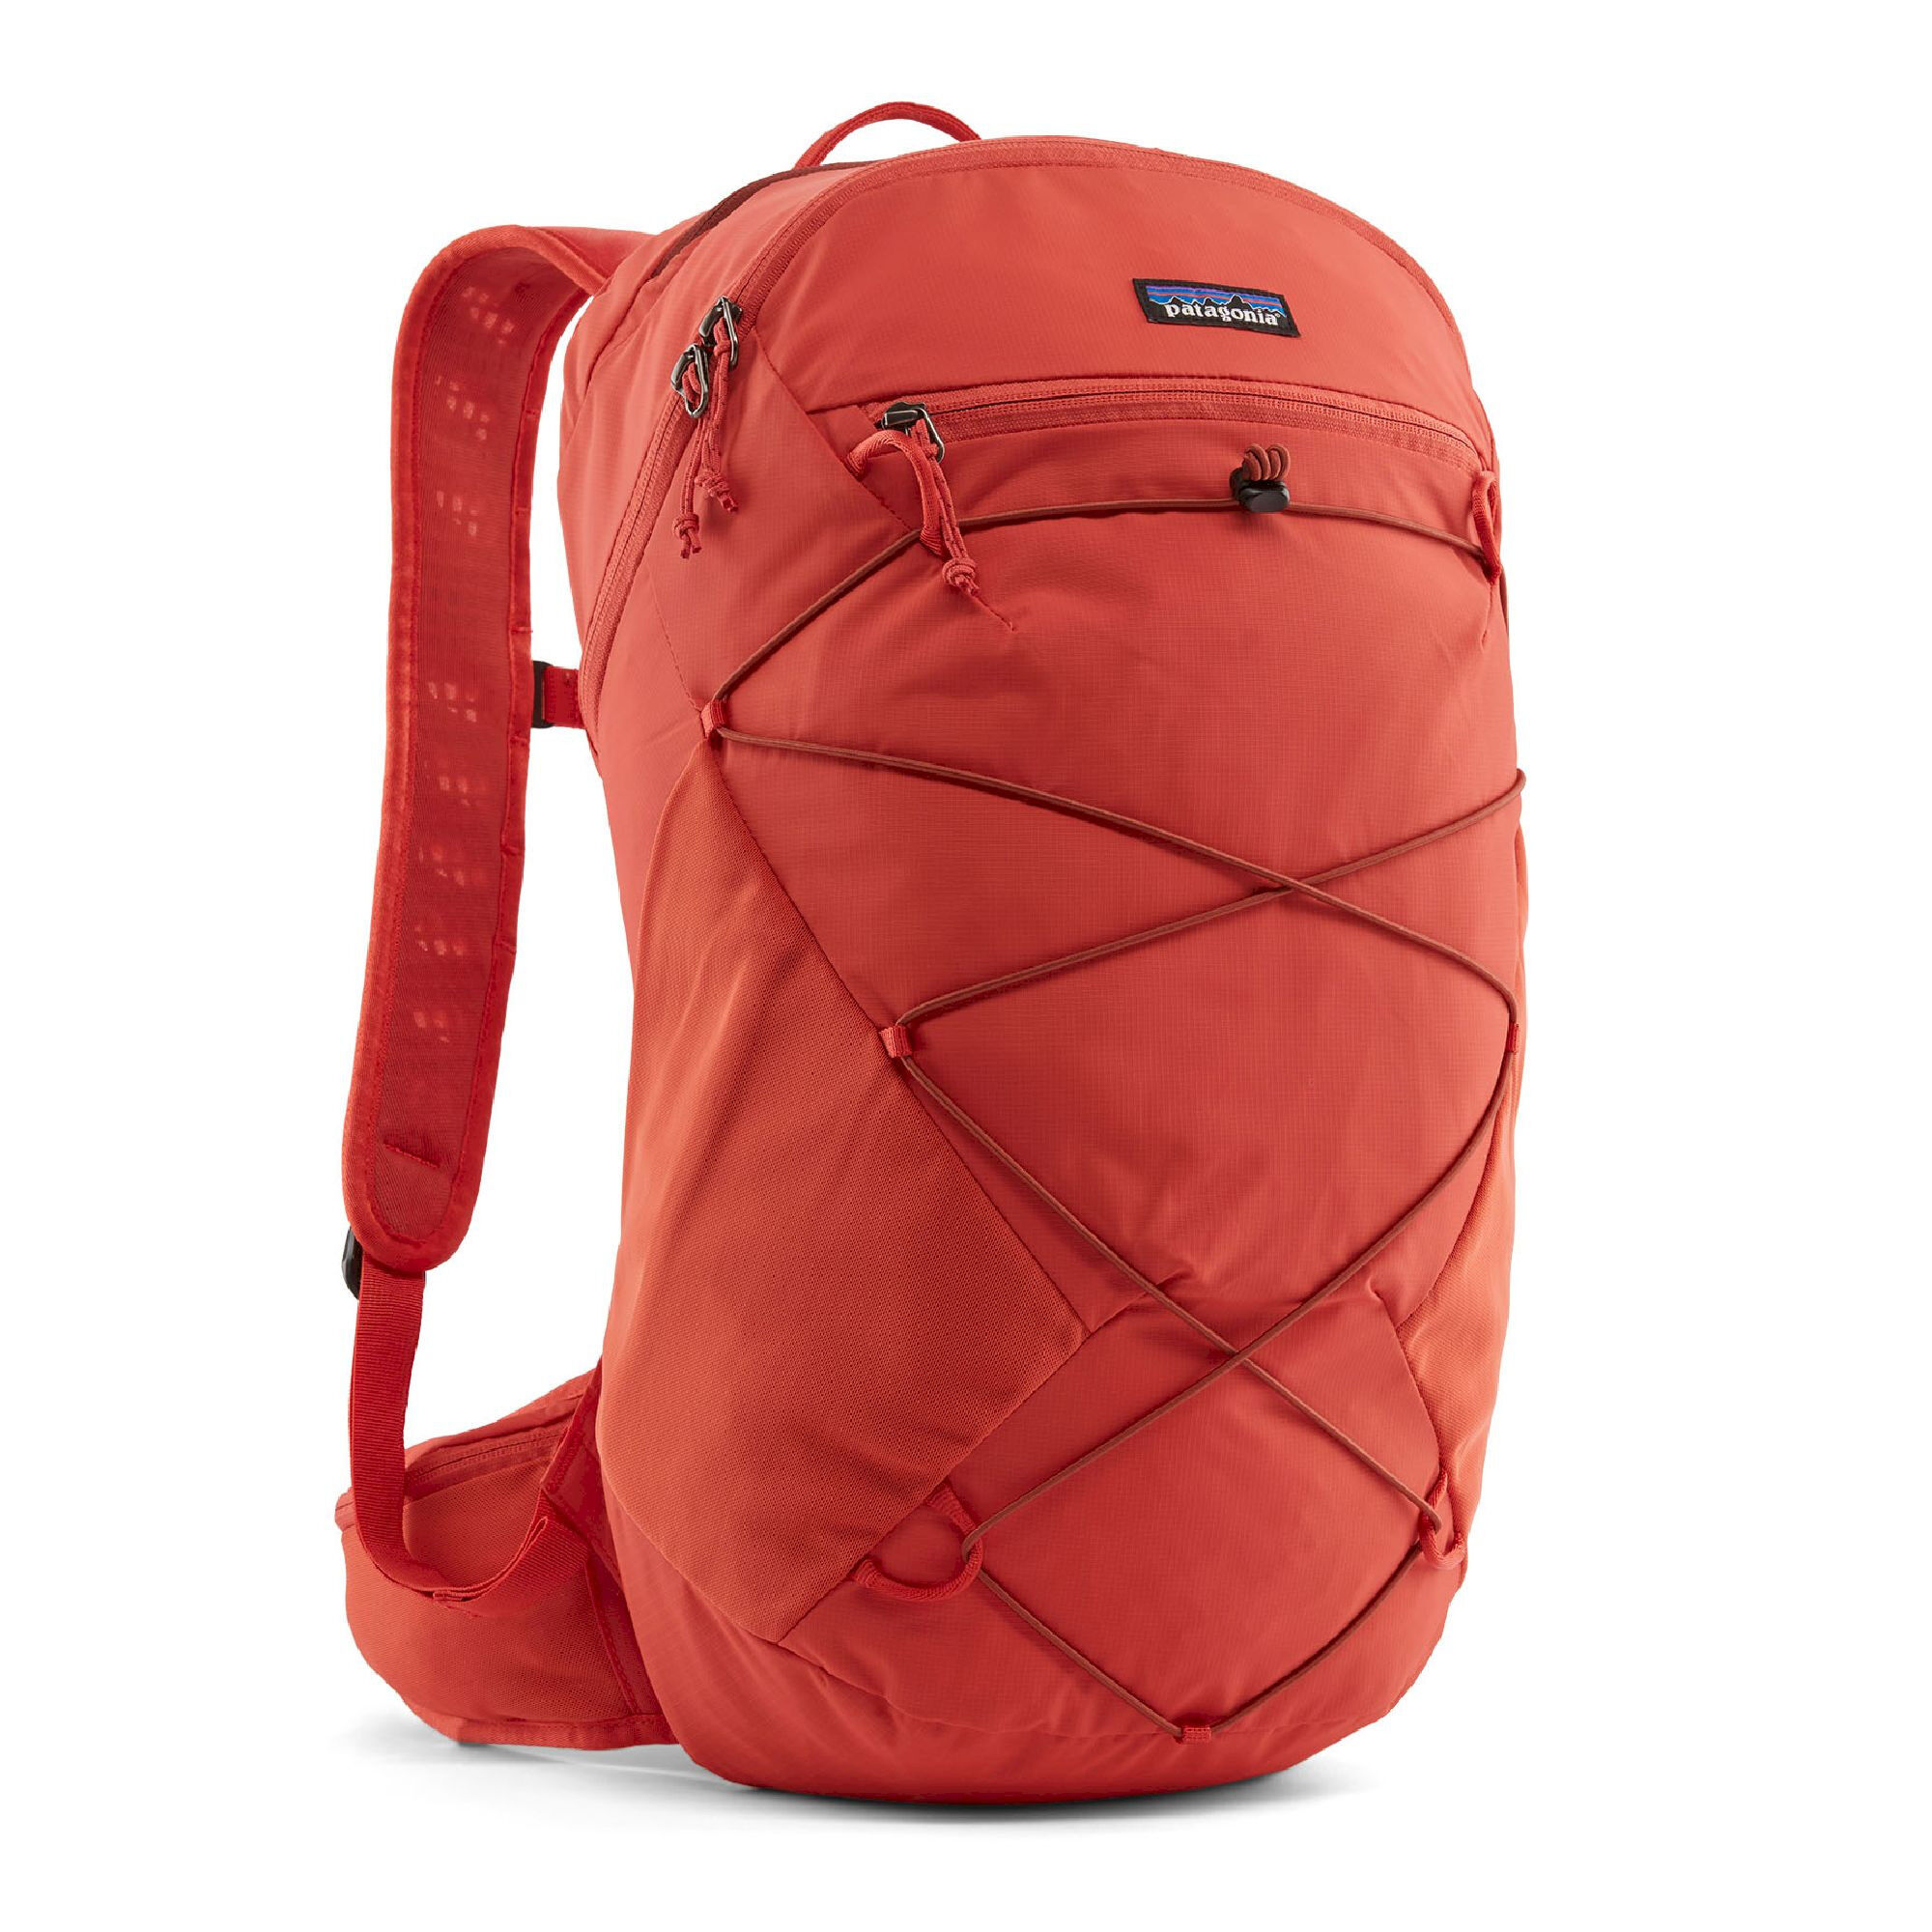 Patagonia Altvia Pack 22L - Walking backpack